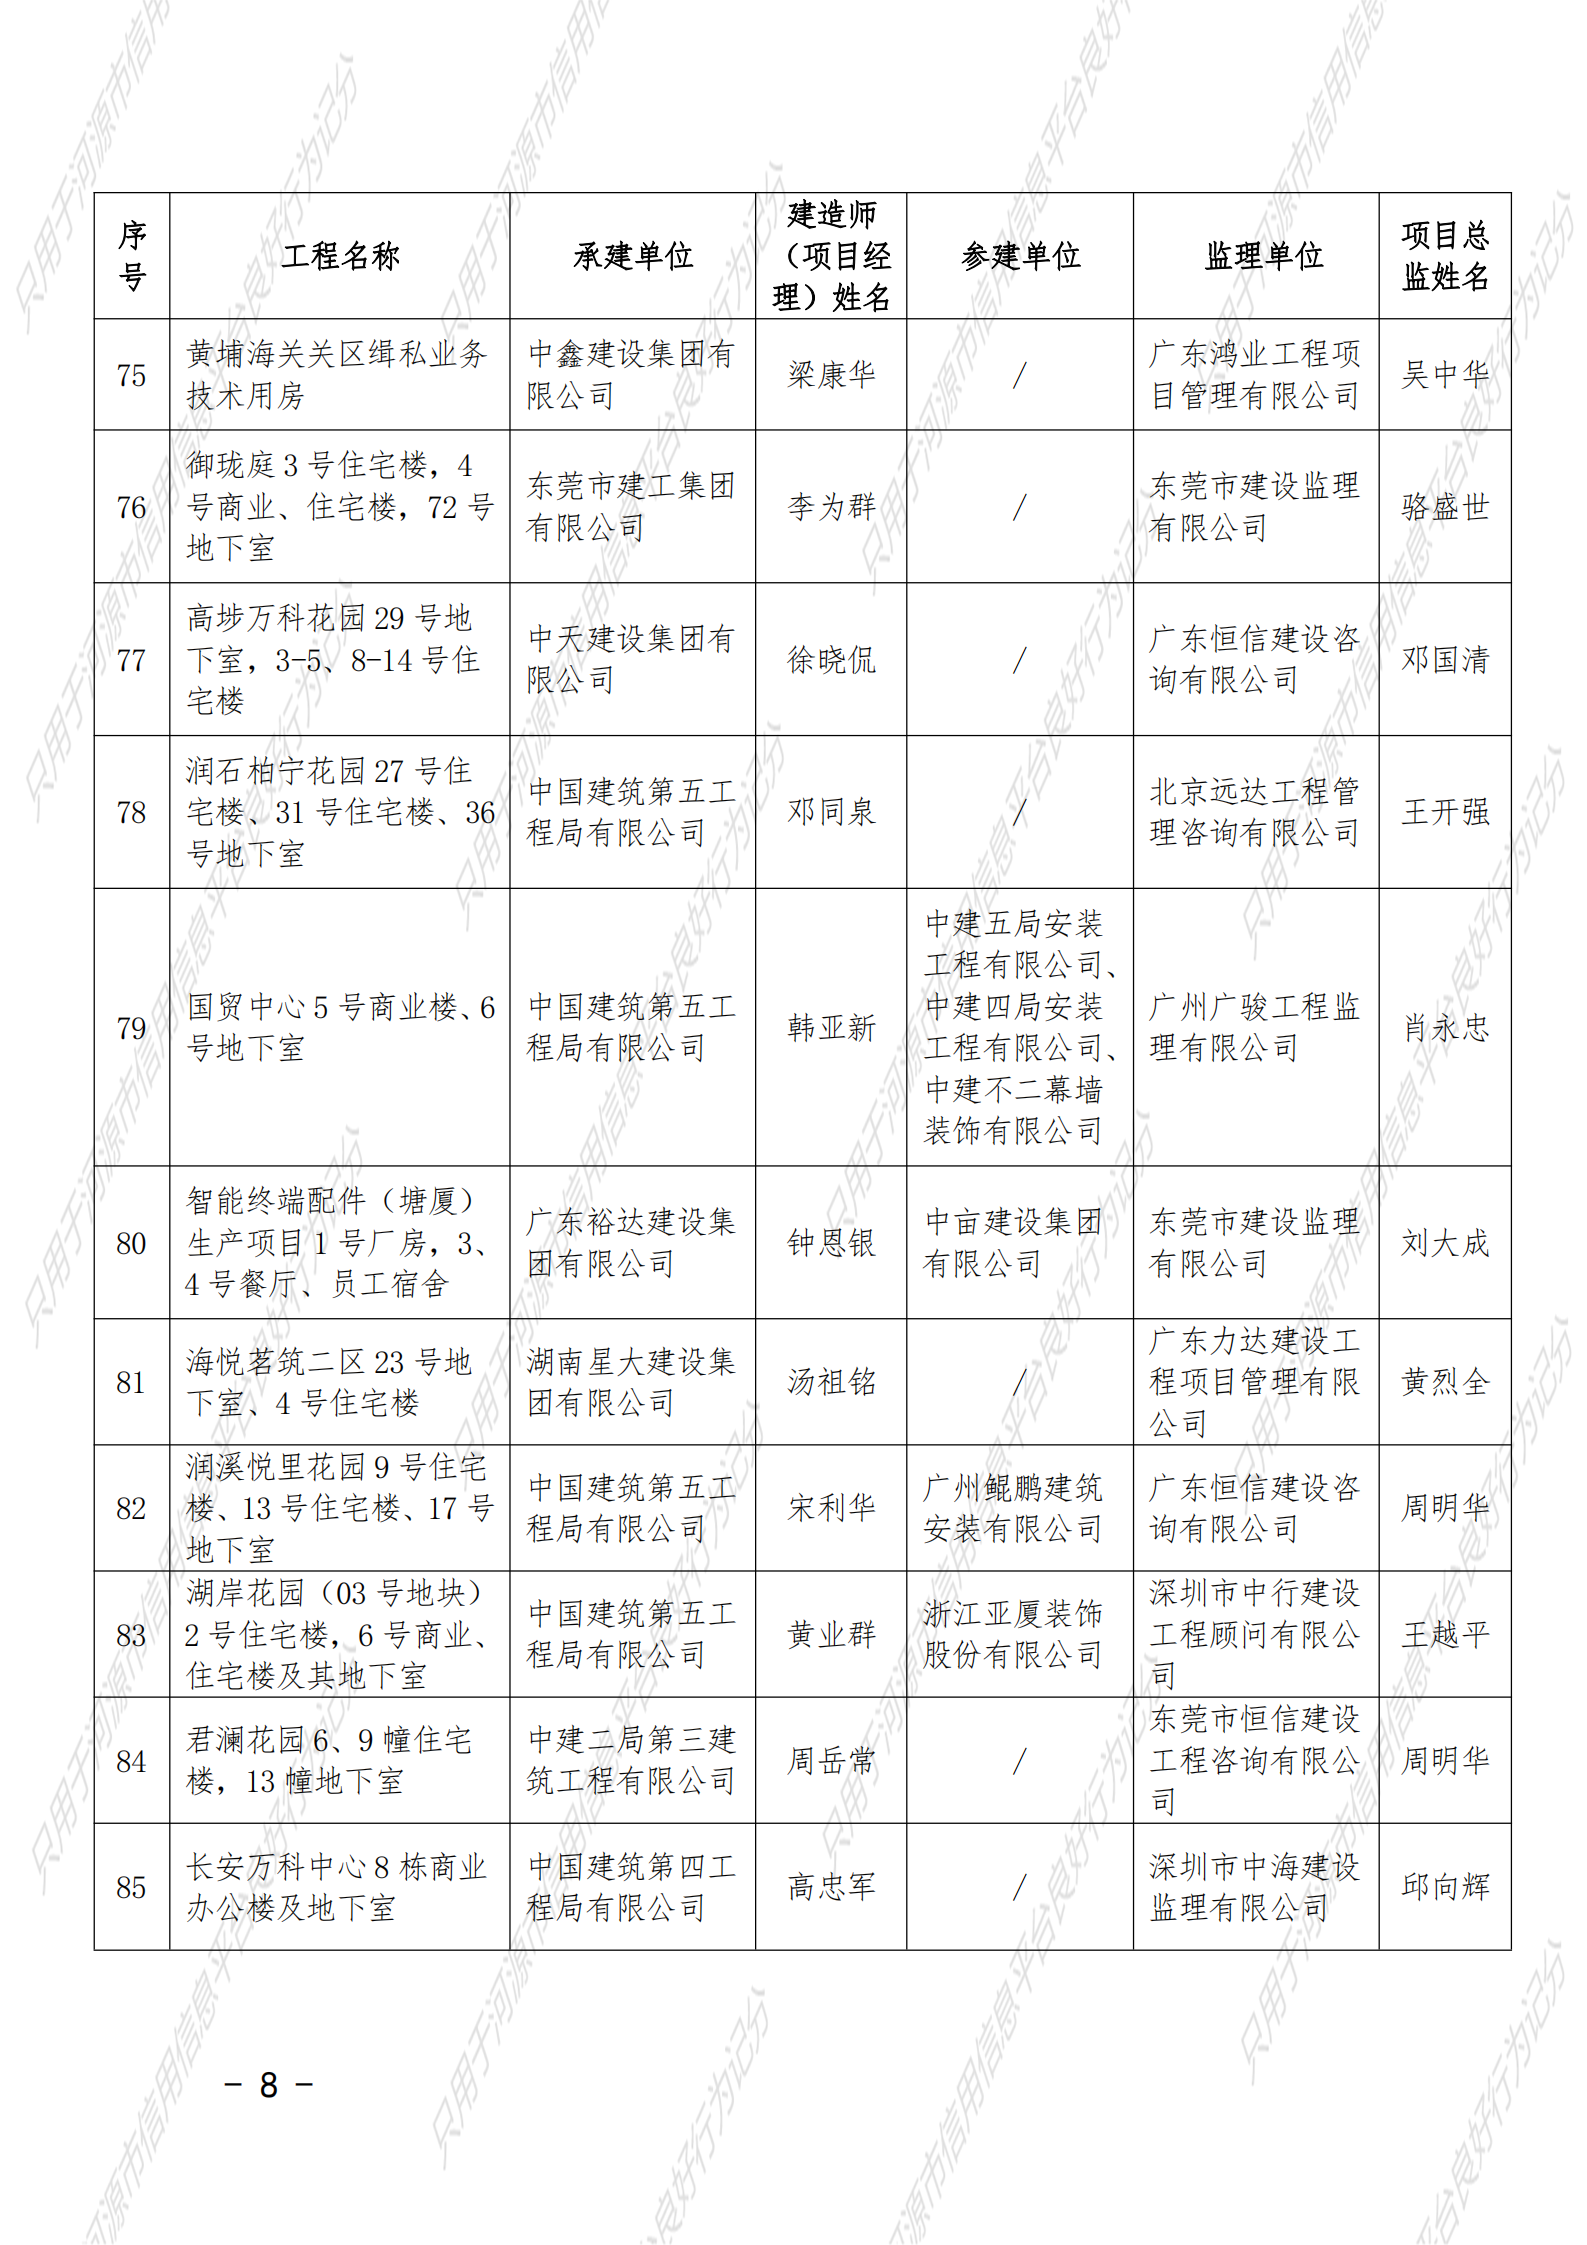 附件 2021年度广东省建设工程优质奖（房屋建筑及专业工程）名单_07